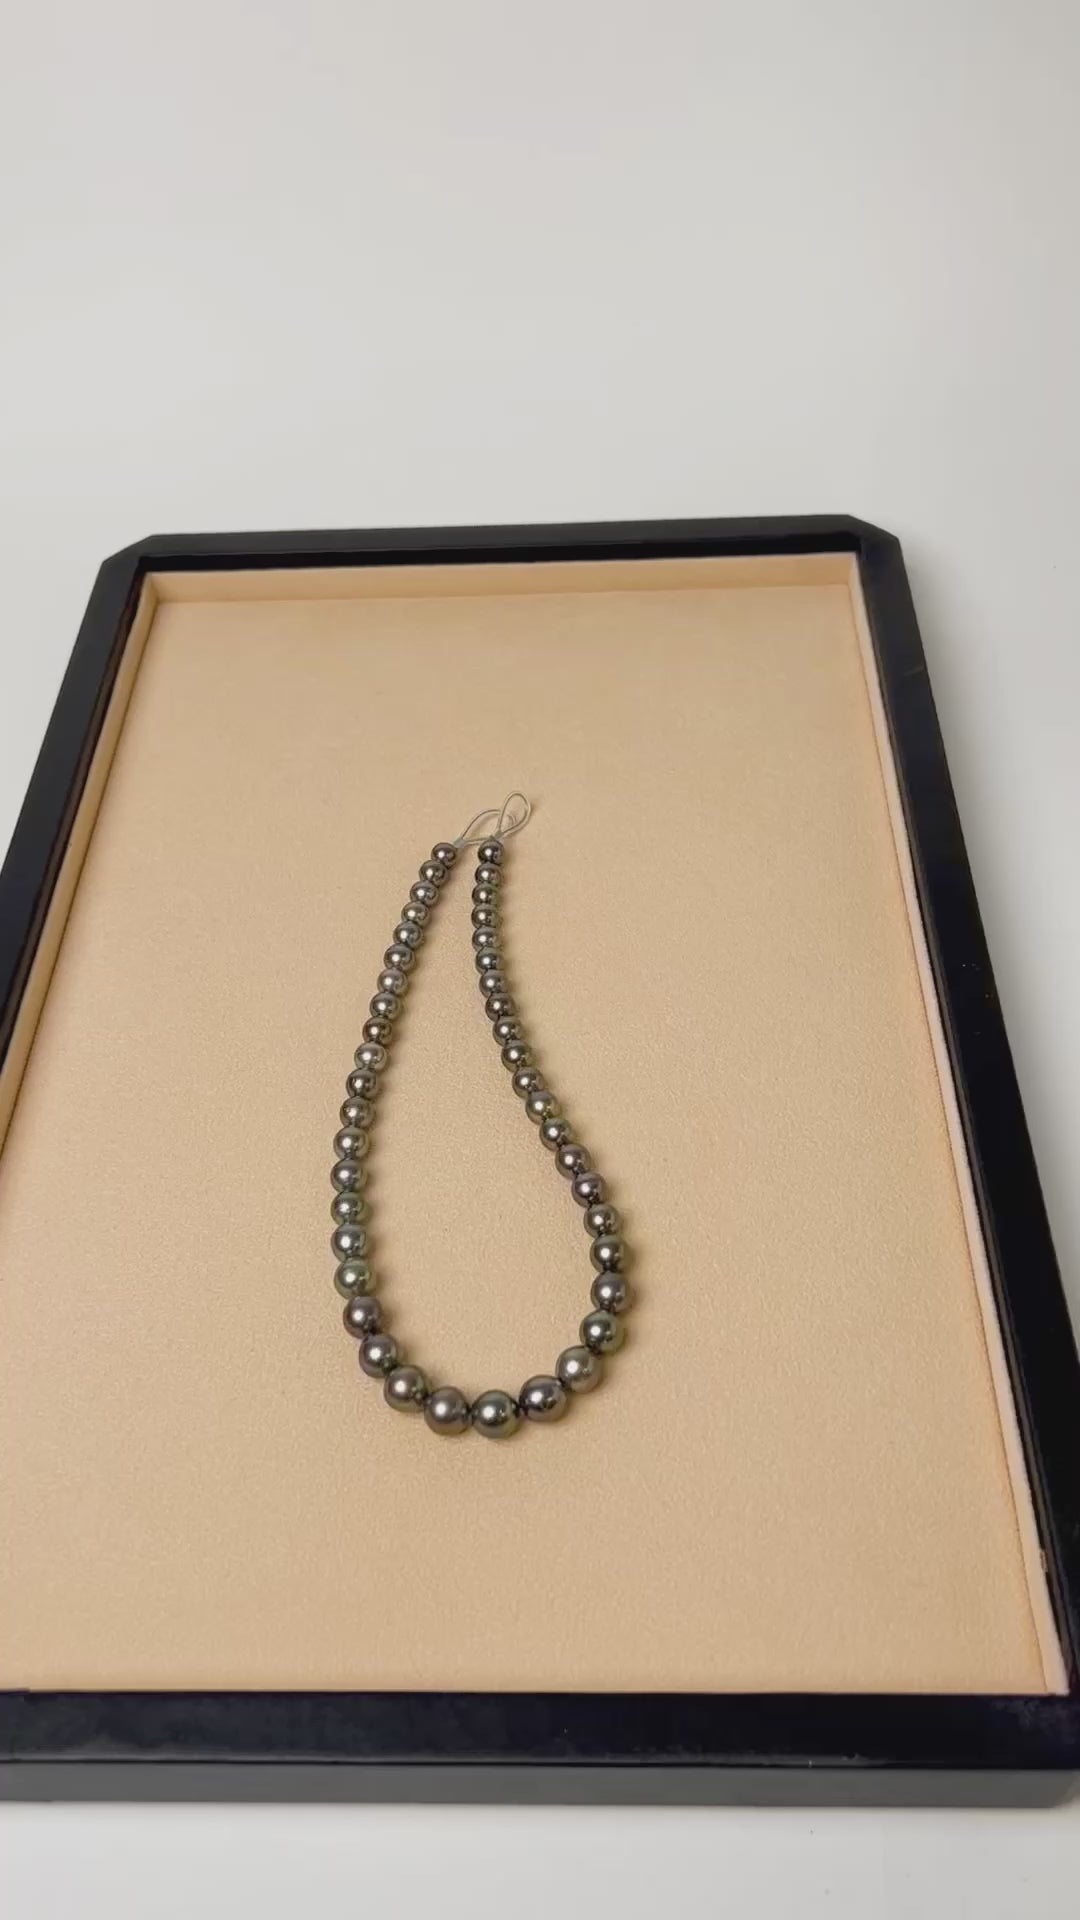 Collar de perlas cultivadas naturales Tahití redondas de 8 a 11 mm de color chocolate gris y bronce